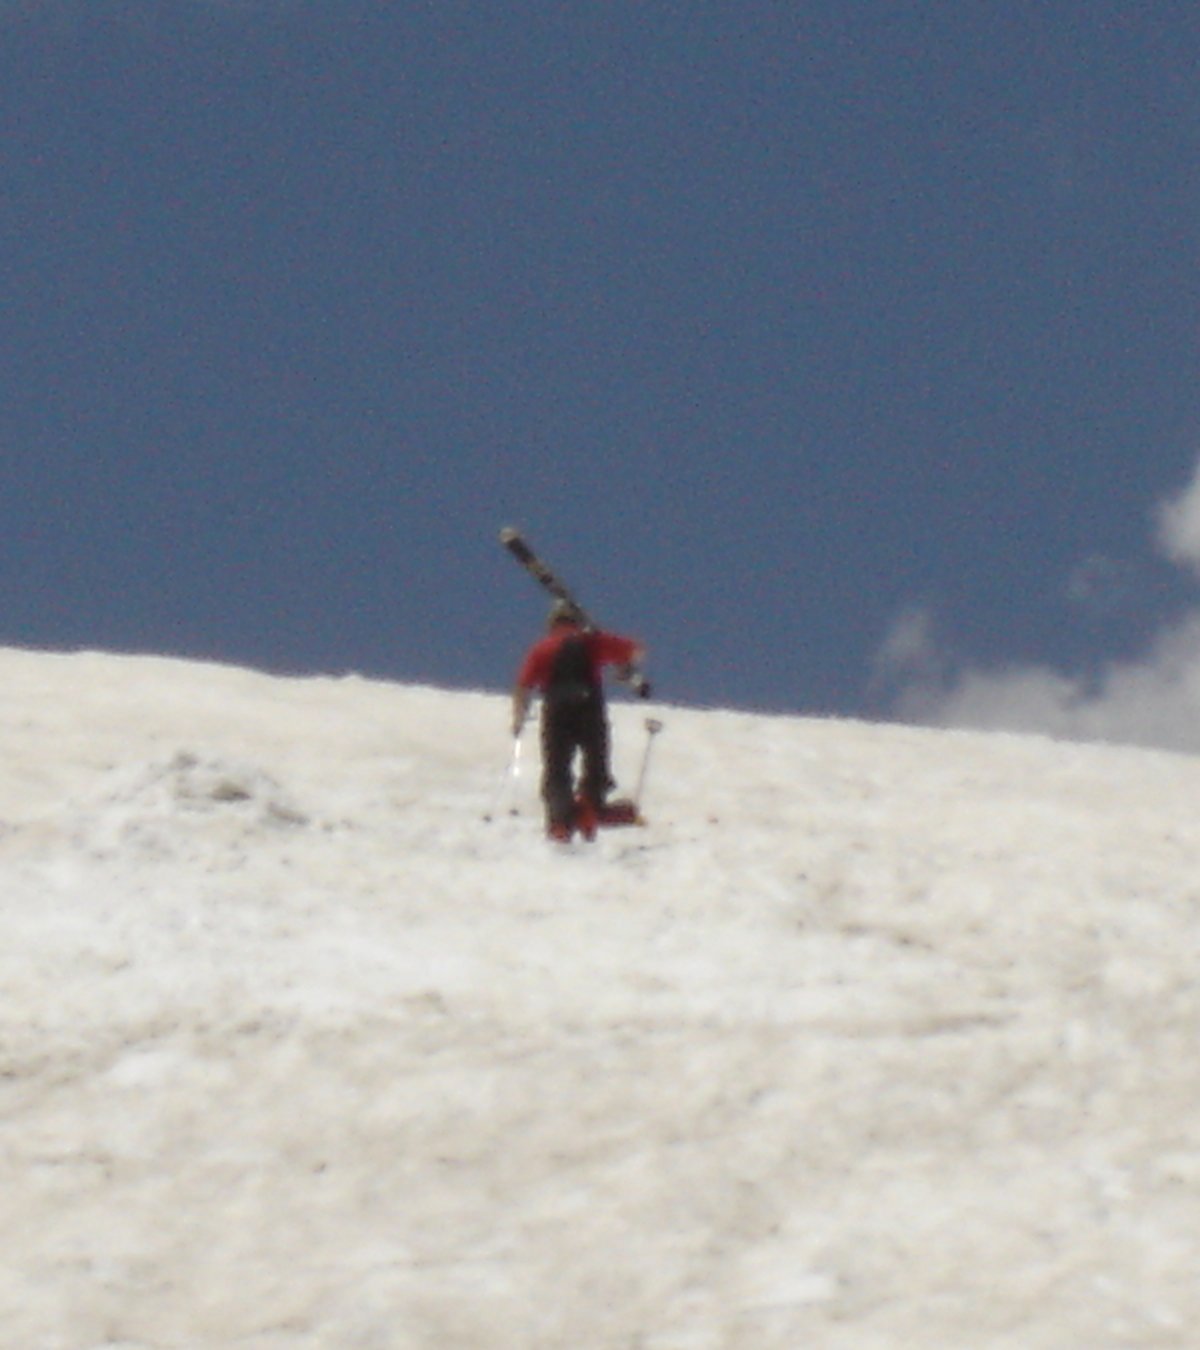 [skier_glacier.jpg]